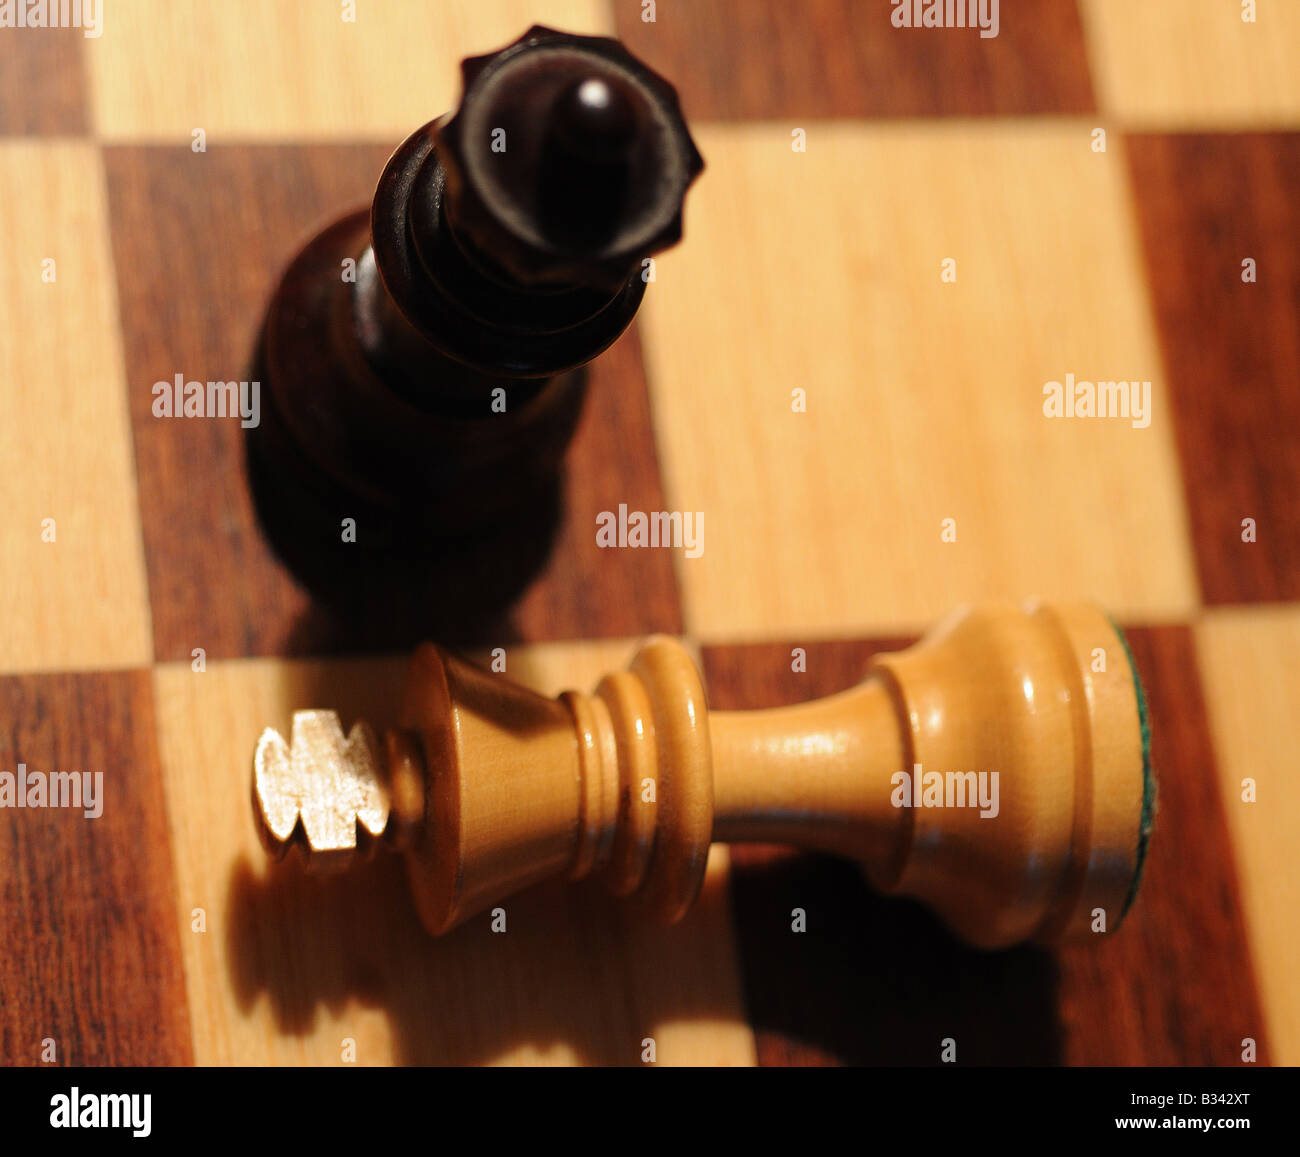 Close-up, imágenes detalladas de diversas piezas de ajedrez, reina, rey, patas, blanco y negro sobre un tablero de ajedrez, renunciar a la derrota, jaque mate Foto de stock